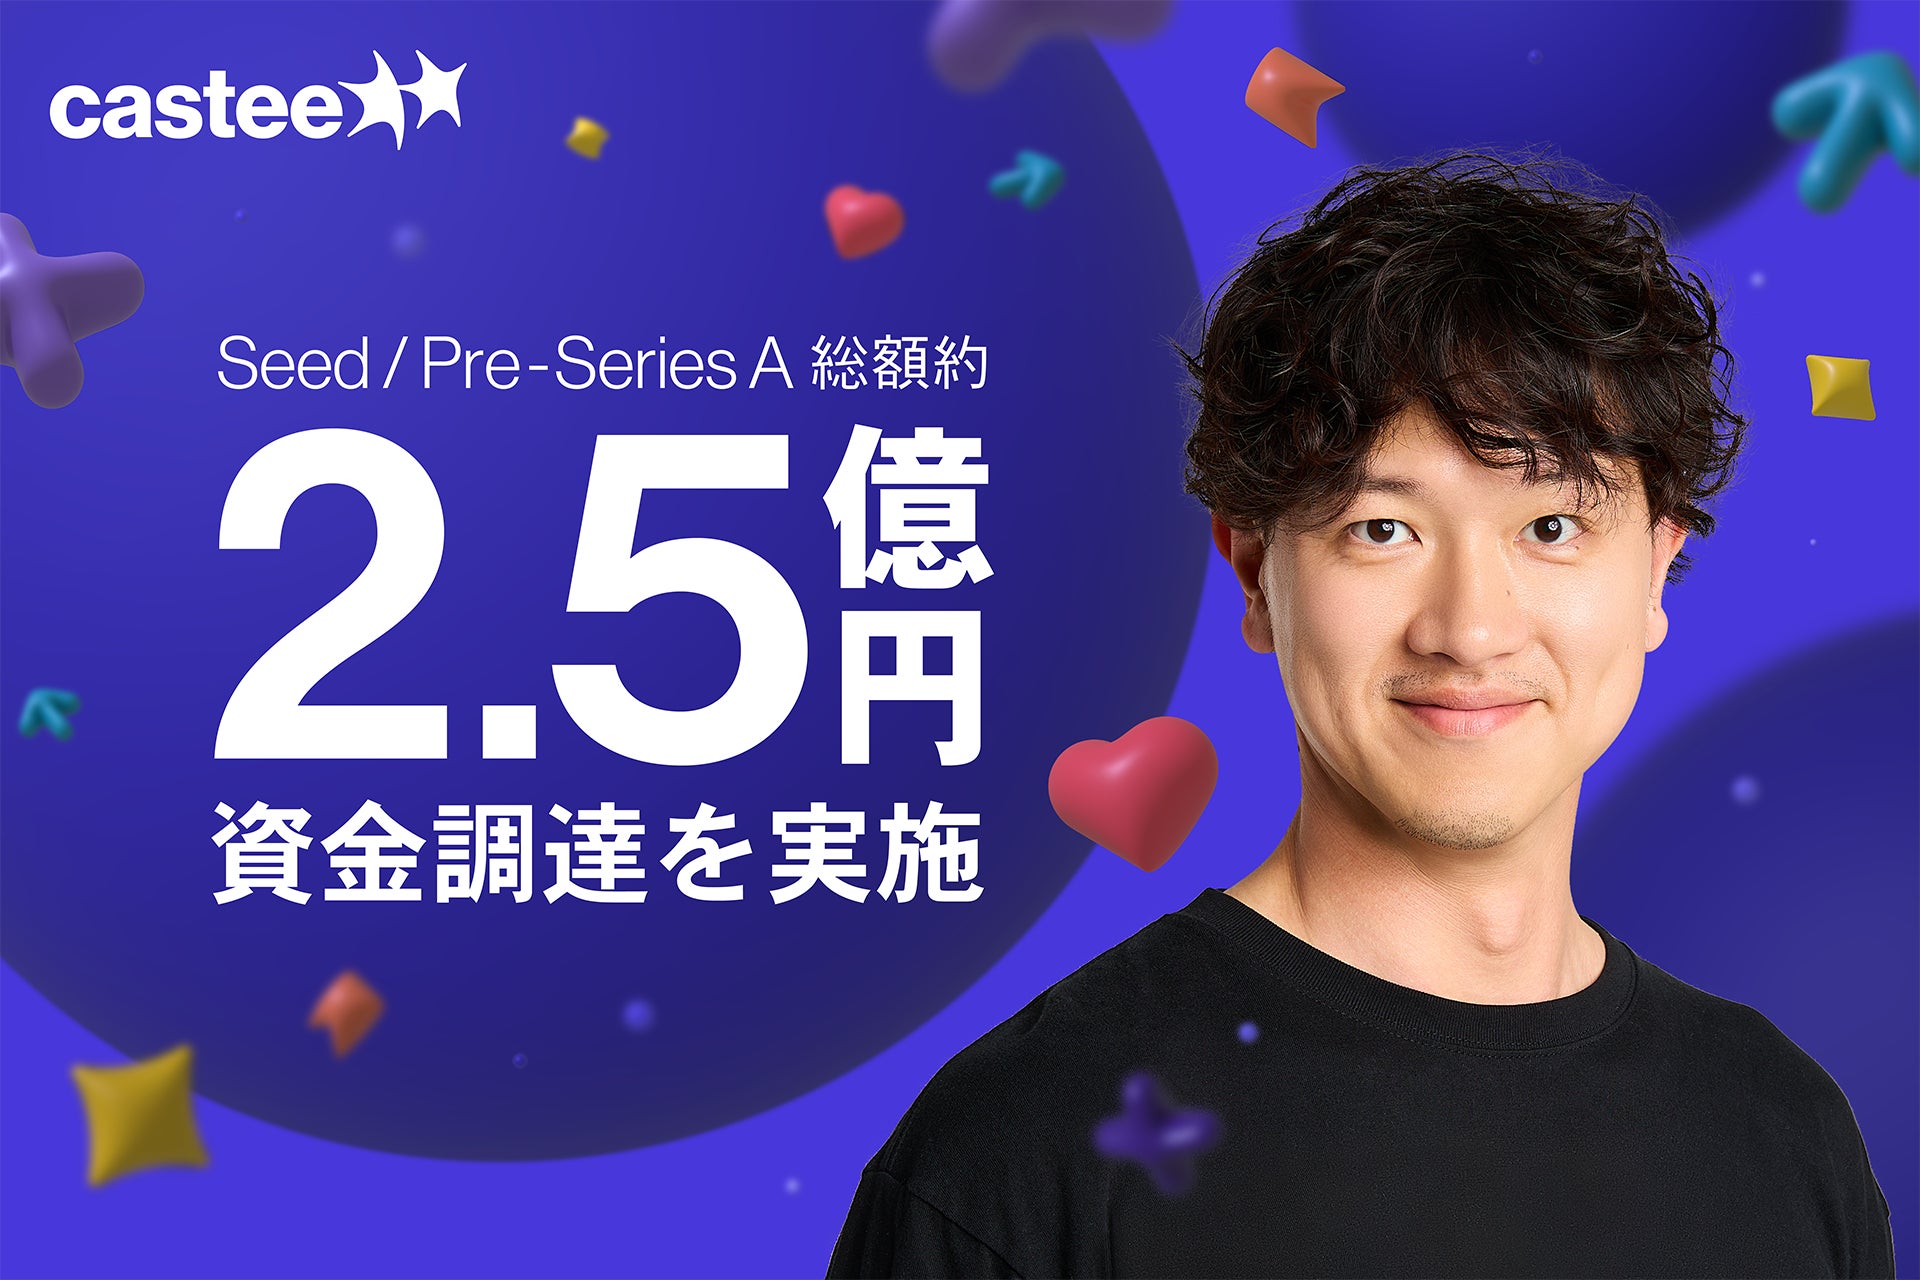 Castee、シード・プレシリーズAで累計約2.5億円を調達　日本初のソーシャルコラボレーションサービス「Castee」β版 提供開始へのサブ画像1